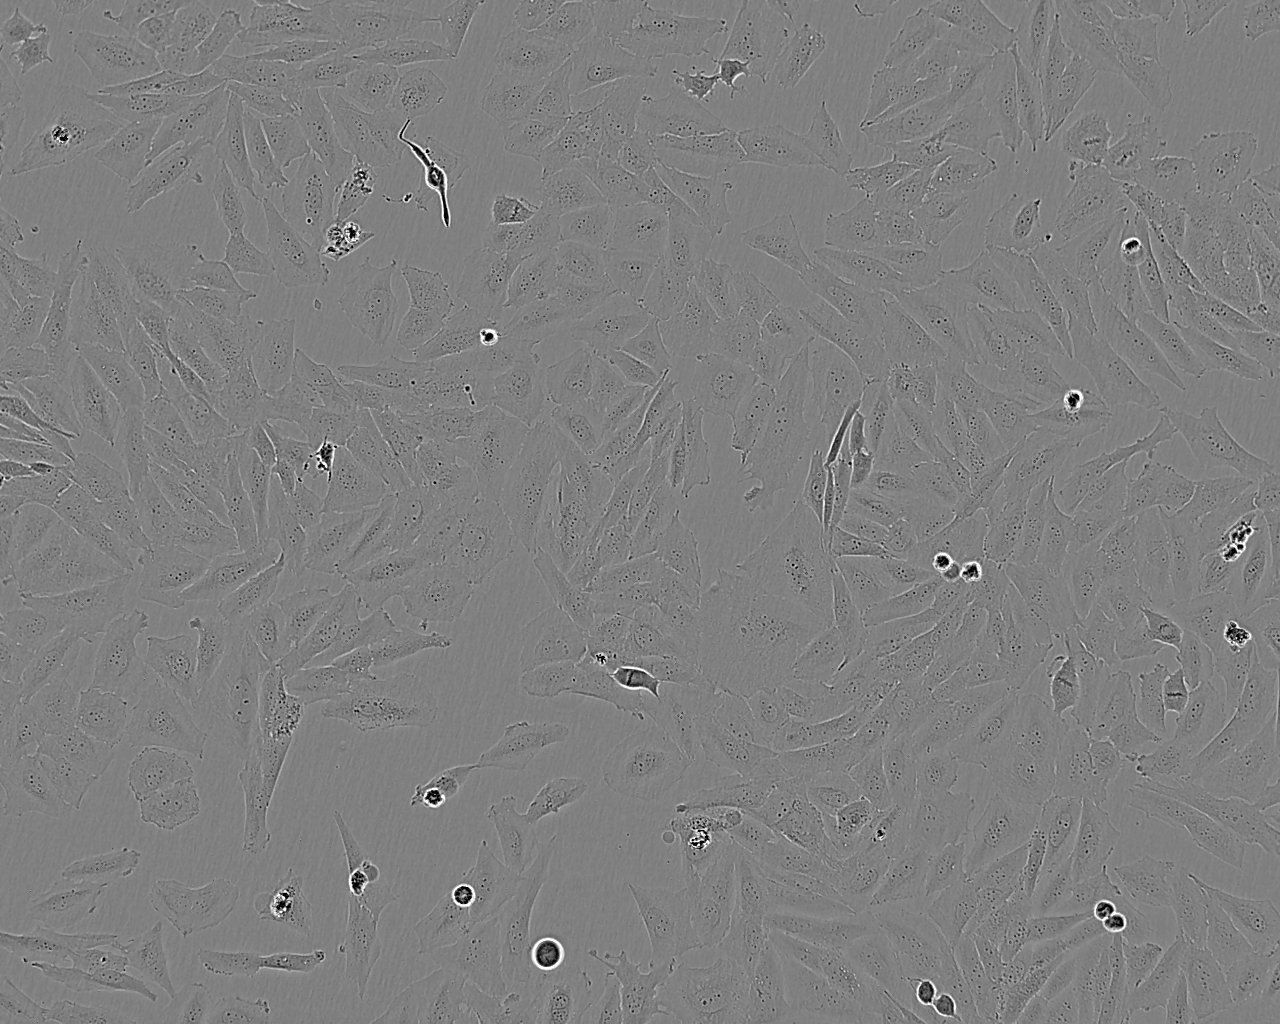 NCI-H1618 epithelioid cells人小细胞肺癌细胞系